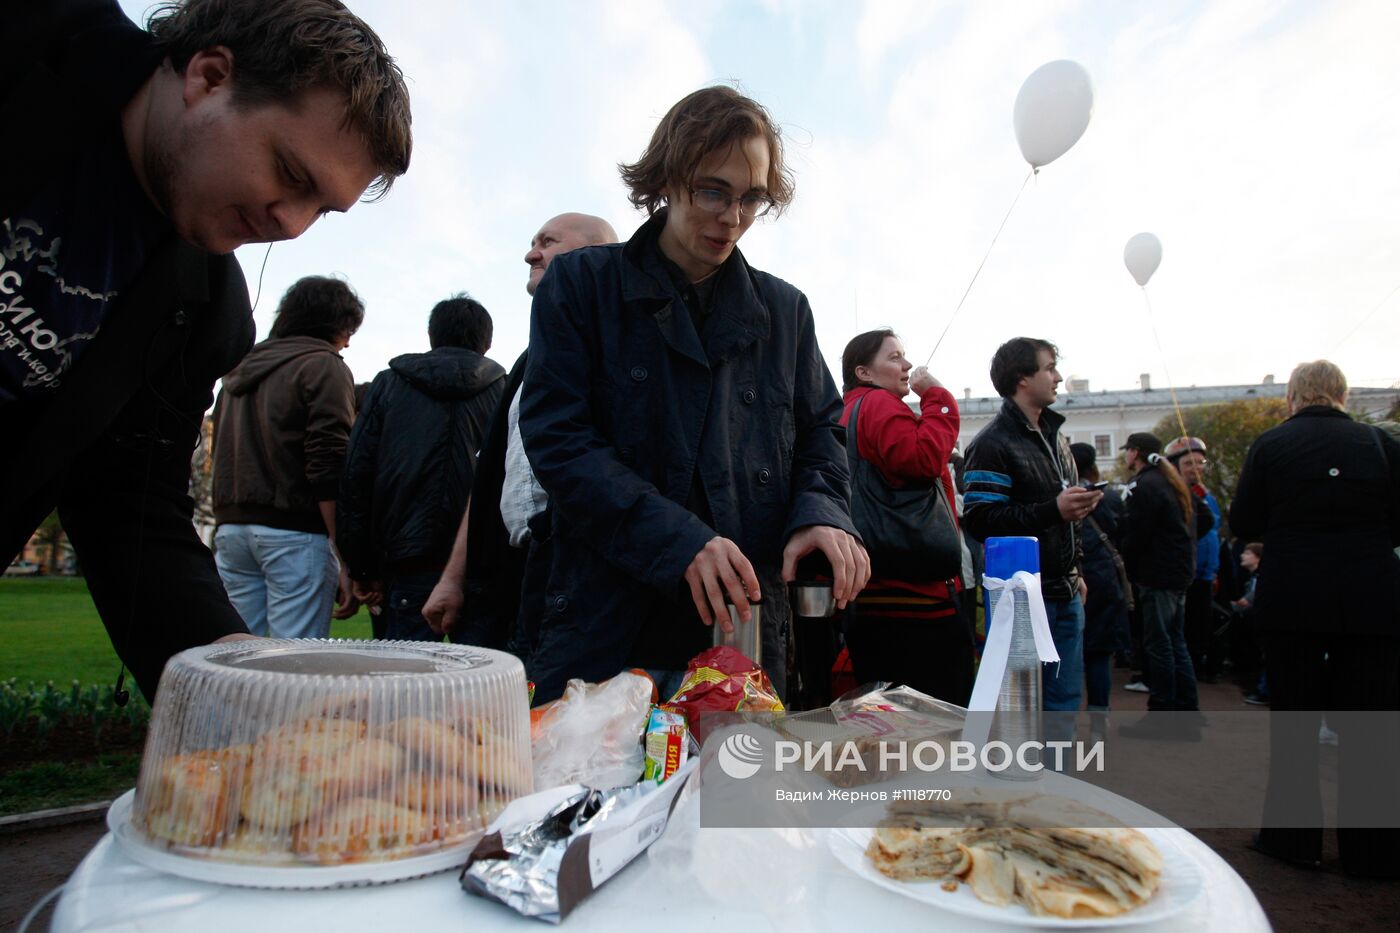 Лагерь протестующих на Исаакиевской площади в Санкт-Петербурге